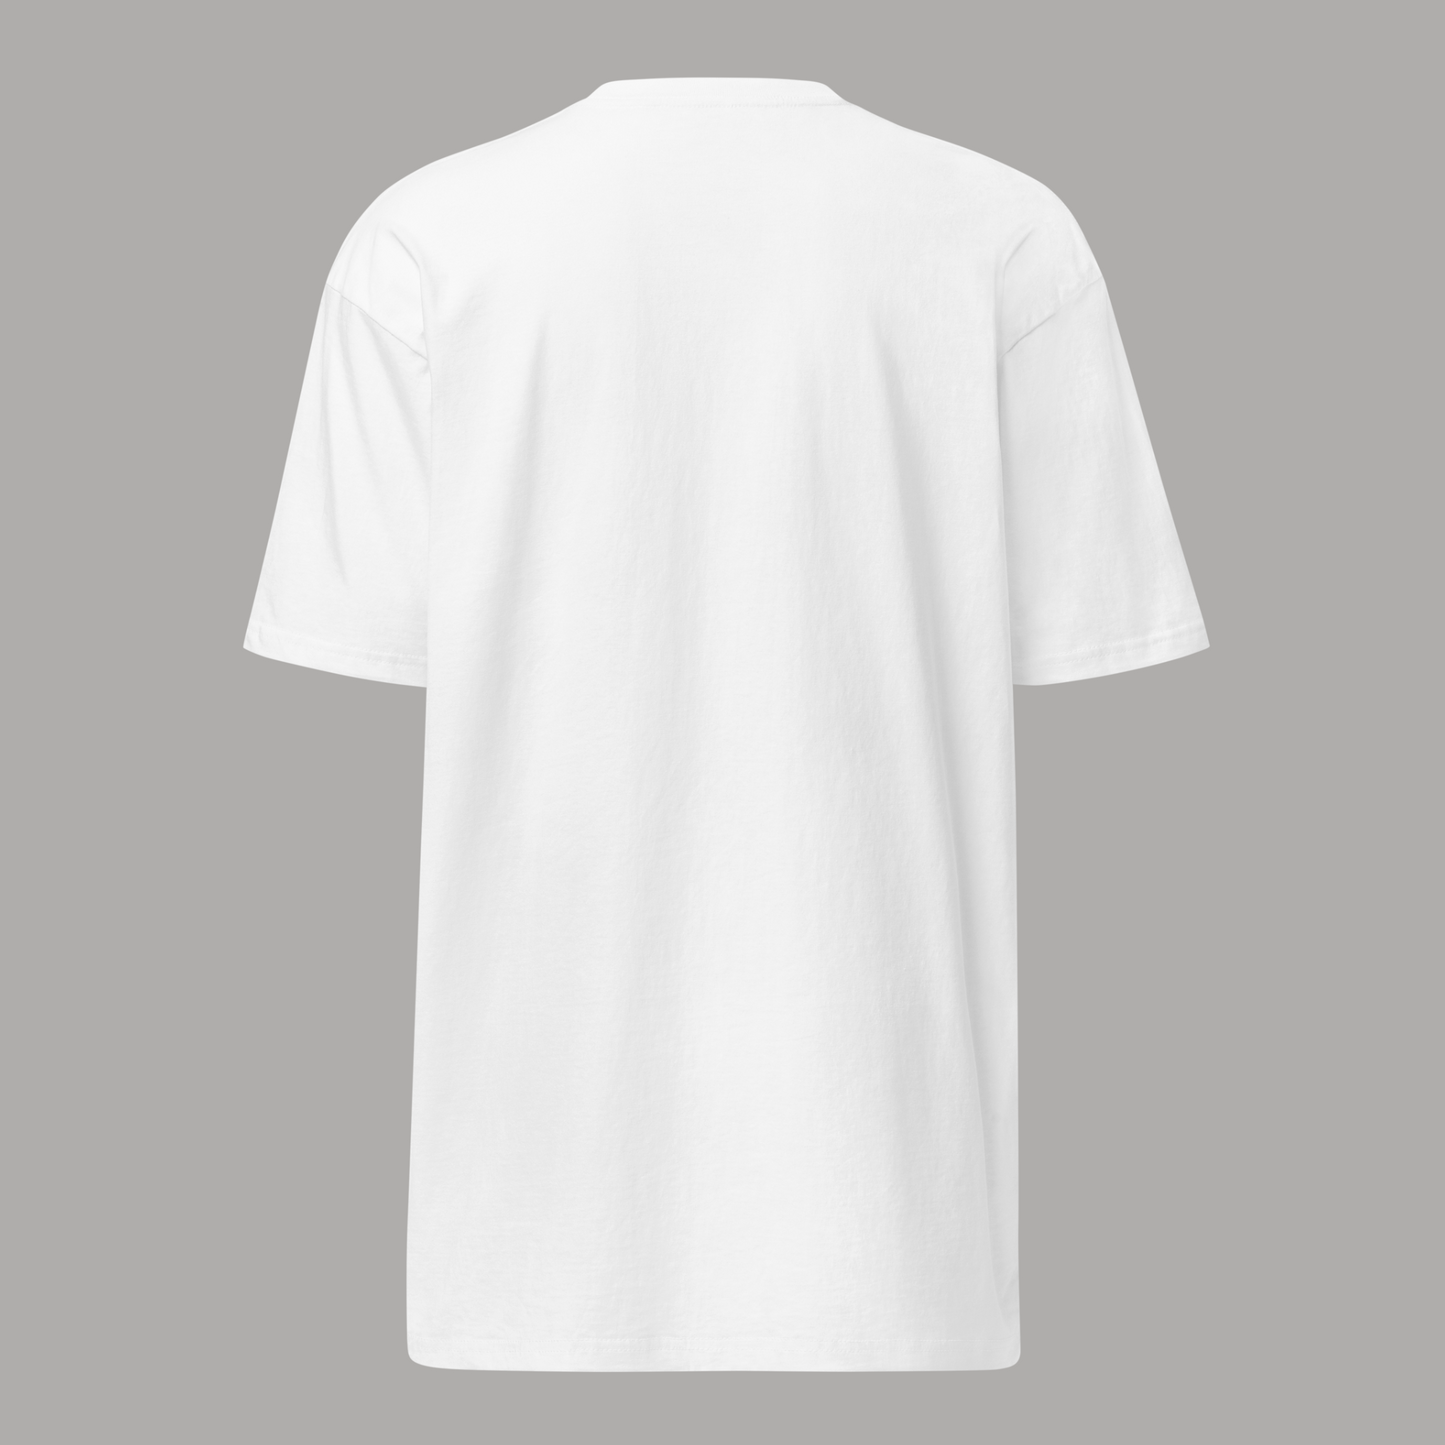 980 x White T-Shirt